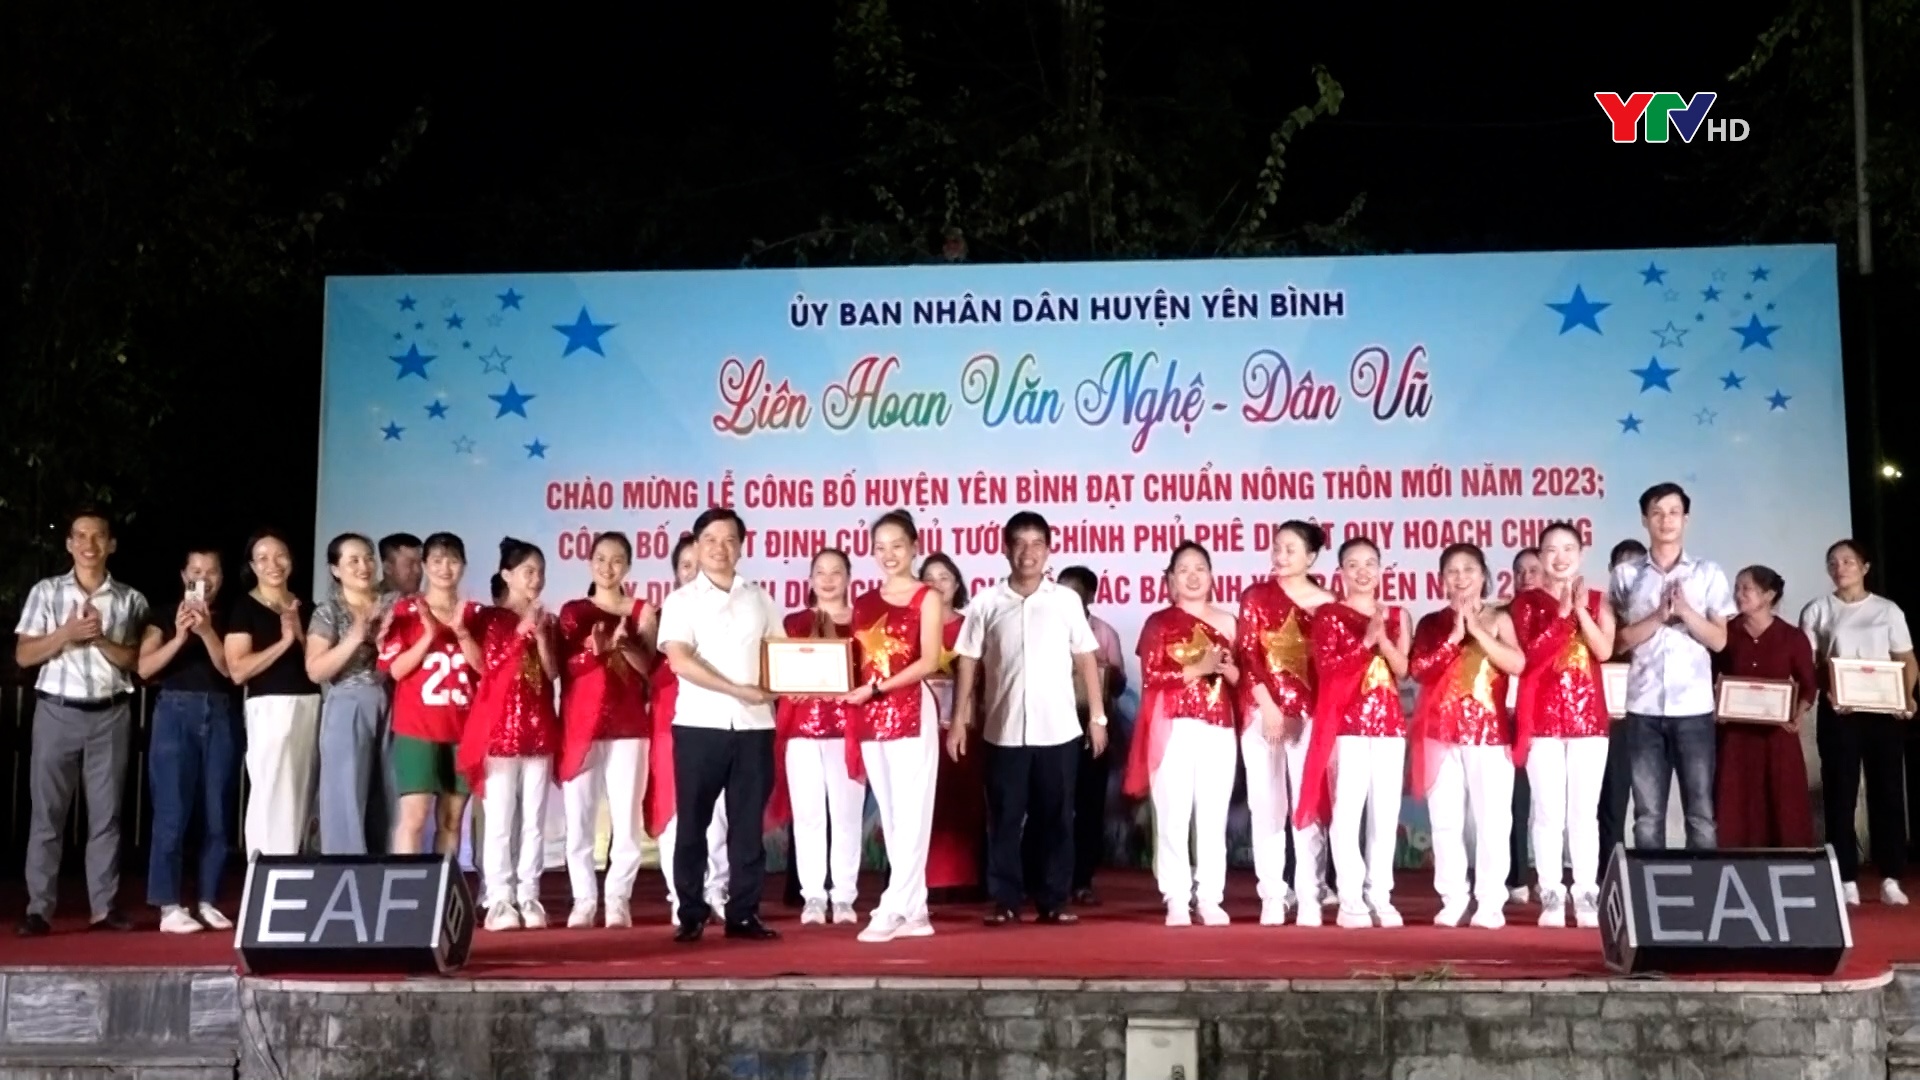 Yên Bình: Liên hoan văn nghệ- dân vũ chào mừng các sự kiện lớn của huyện